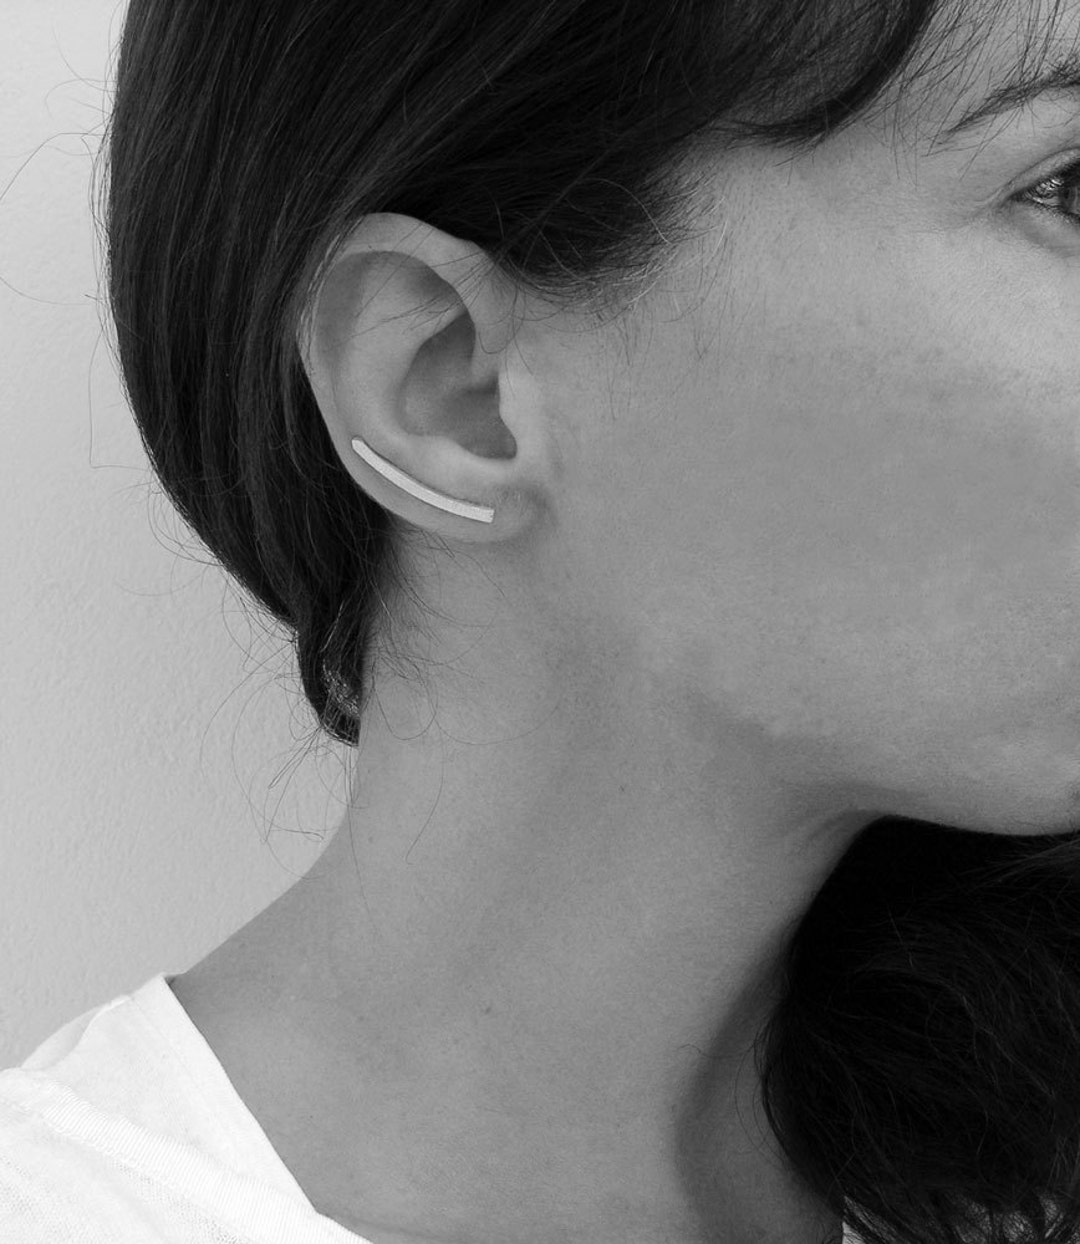 Boucle d'oreille plaqué or pour femmes: puces, créoles, montantes, – Elise  et moi